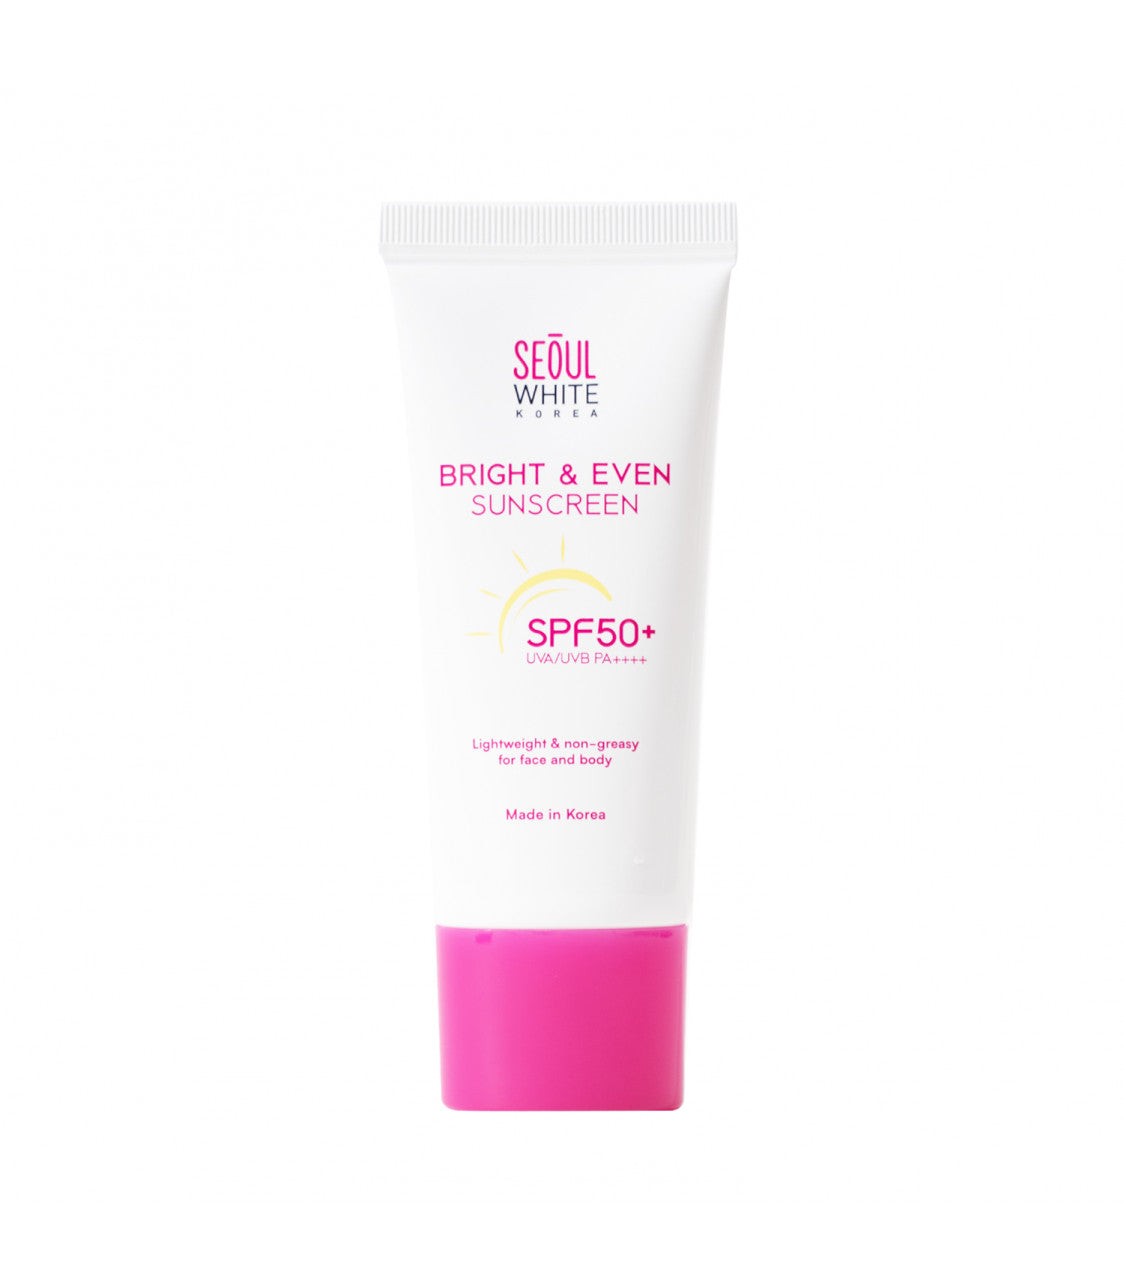 Seoul White Korea Bright & Even Sunscreen (SPF50+ UVA/UVB PA++++) 30g